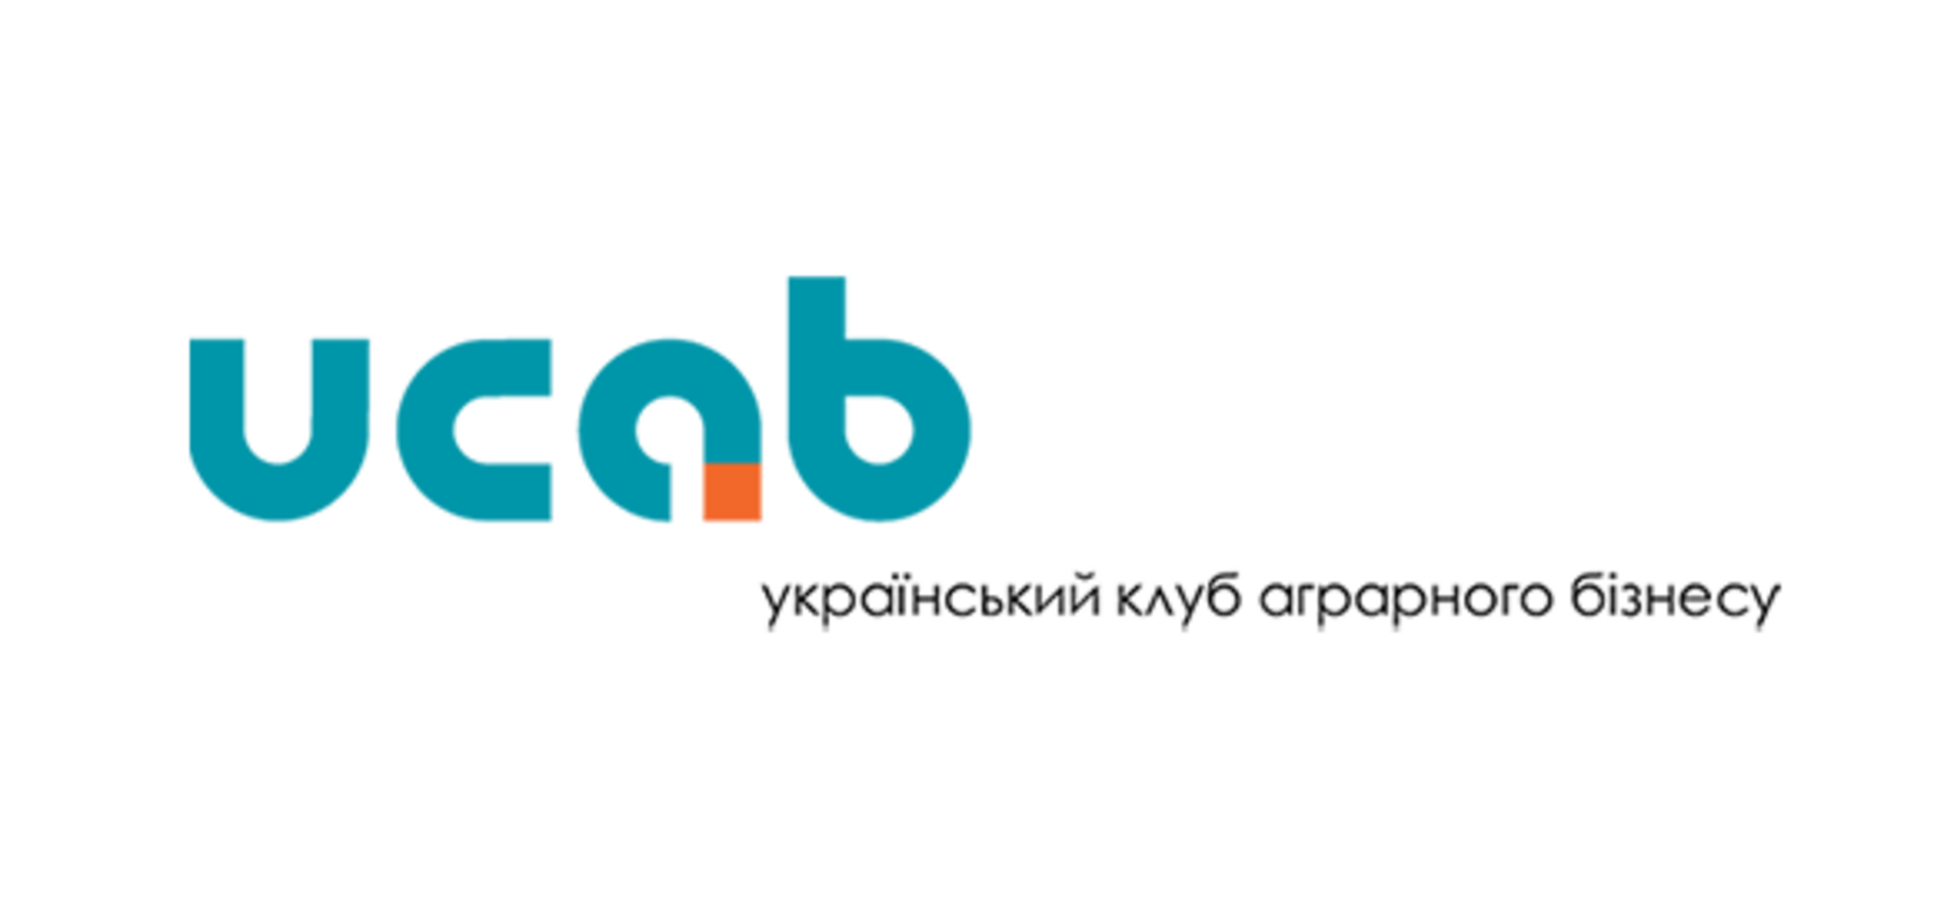 'Український клуб аграрного бізнесу' звернувся до Зеленського через 'Укрлендфармінг' Бахматюка